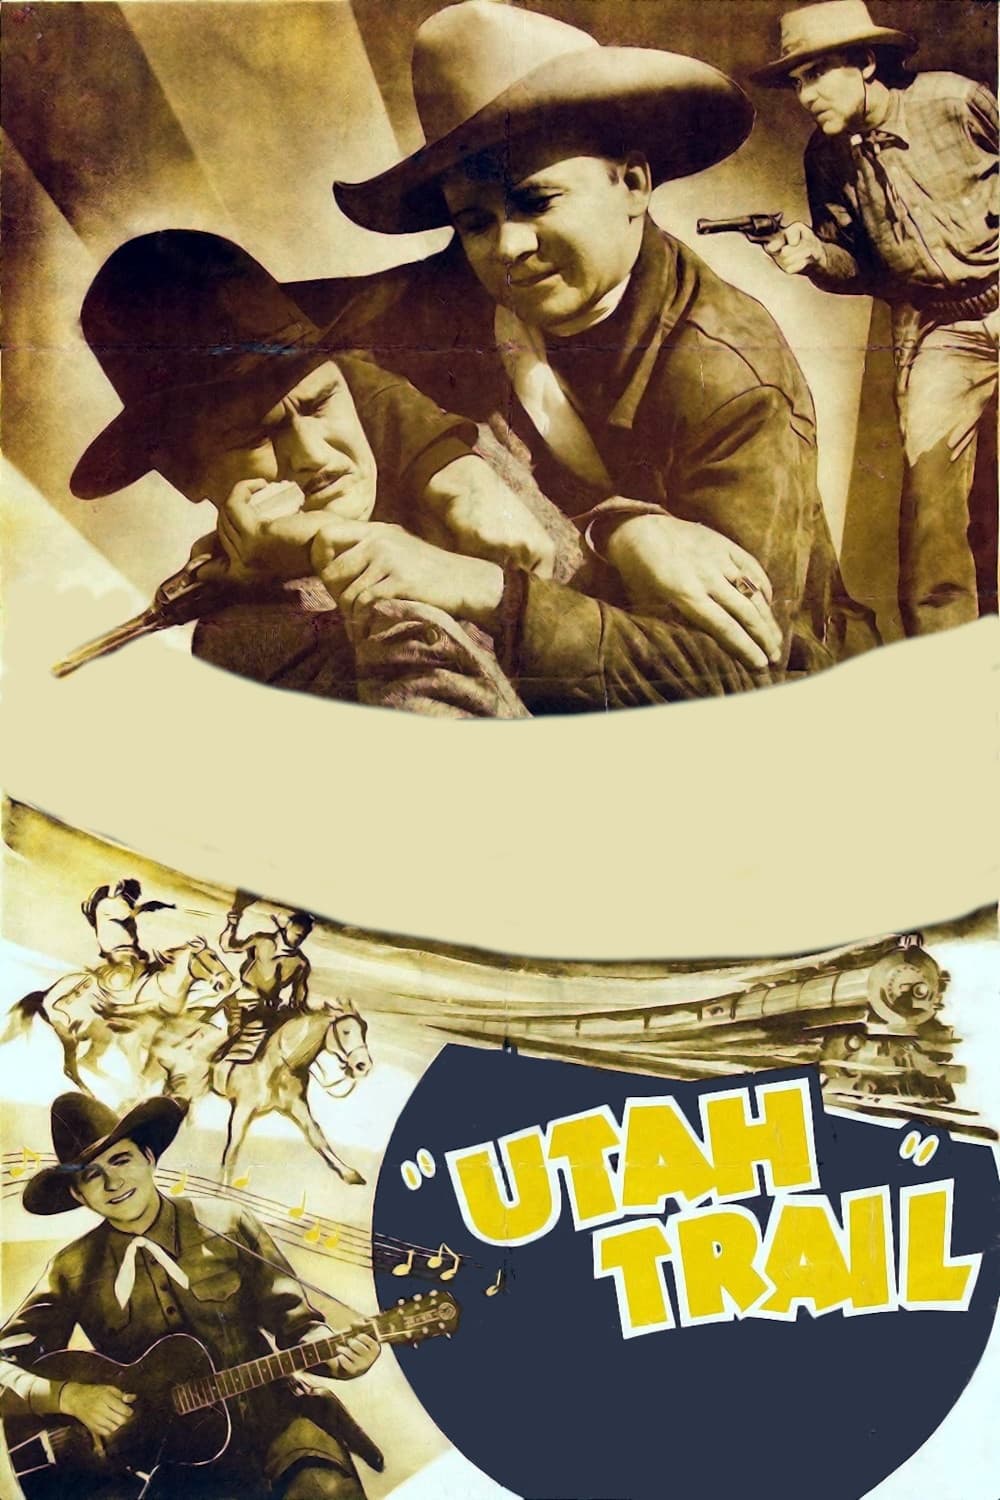 Utah Trail